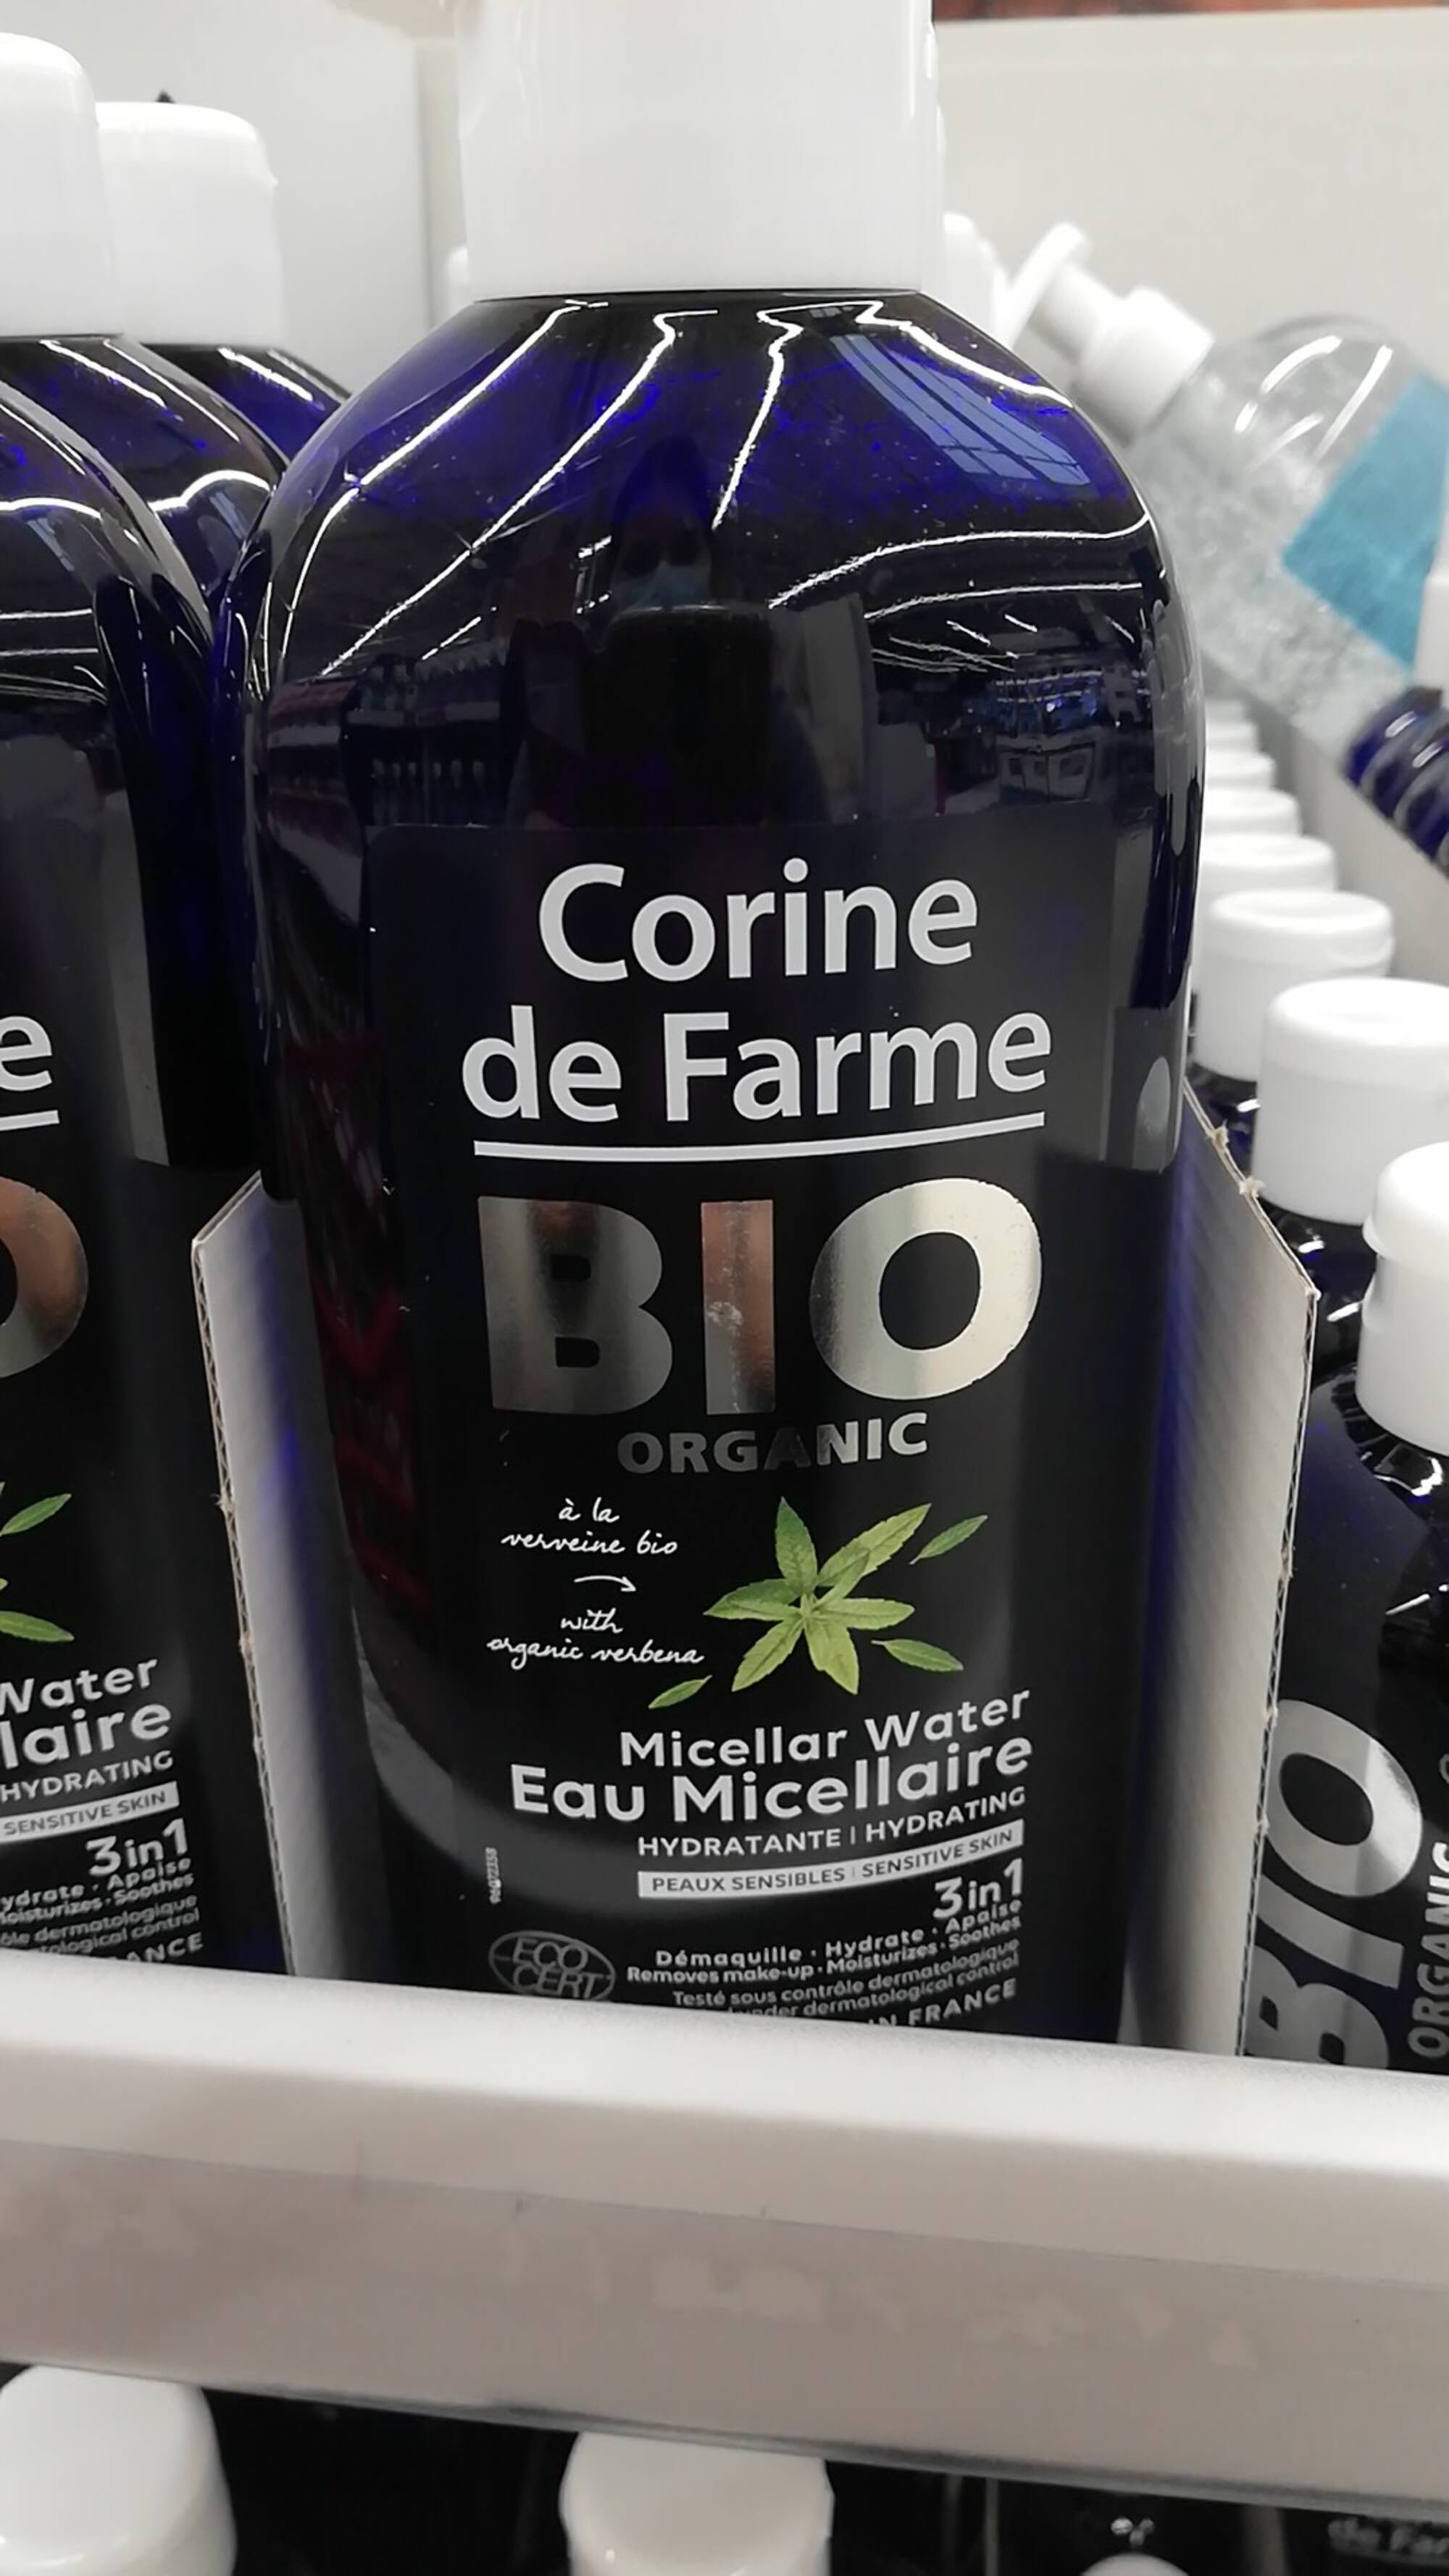 CORINE DE FARME - Bio organic - Eau micellaire hydratante 3 in 1